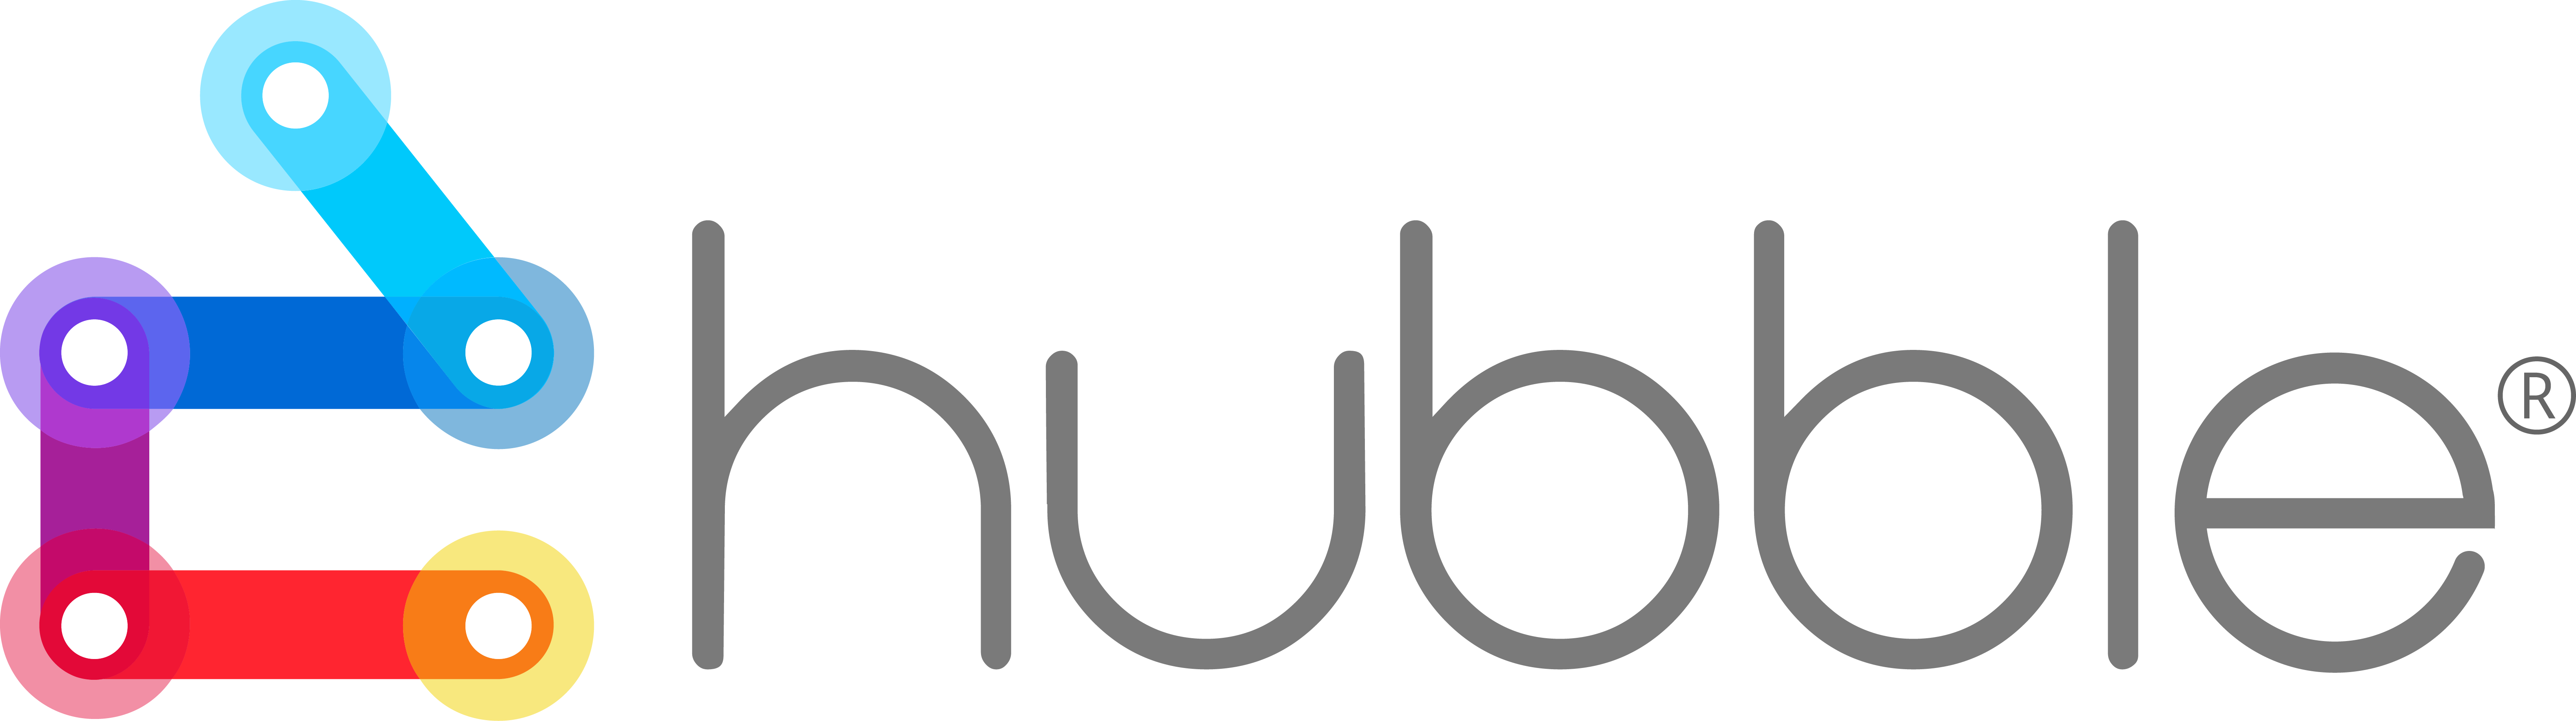 Hubble logo